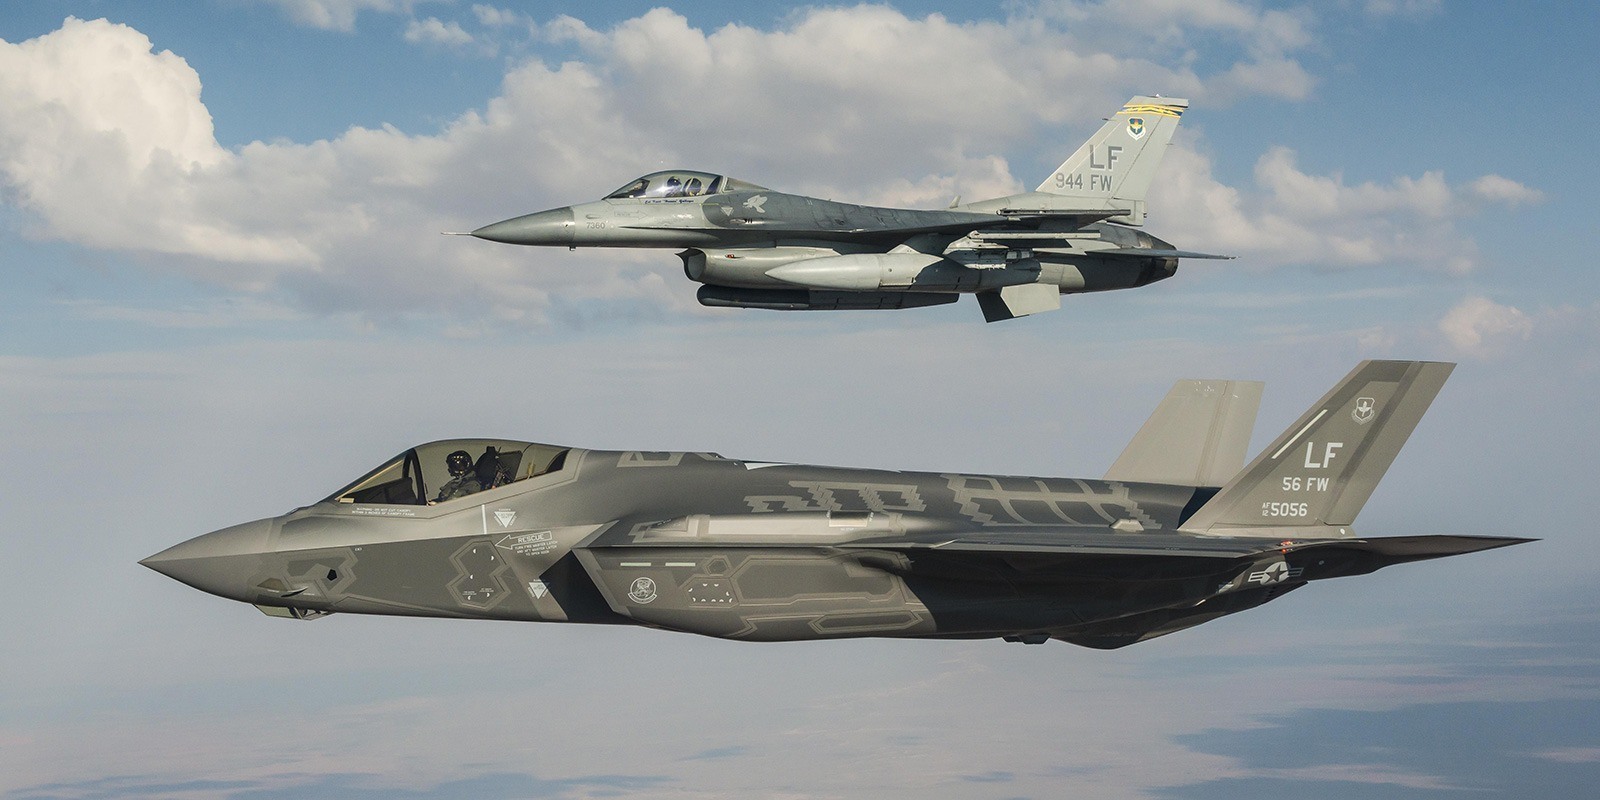 Video: Luke AFB in Arizona may receive F-35 JSF